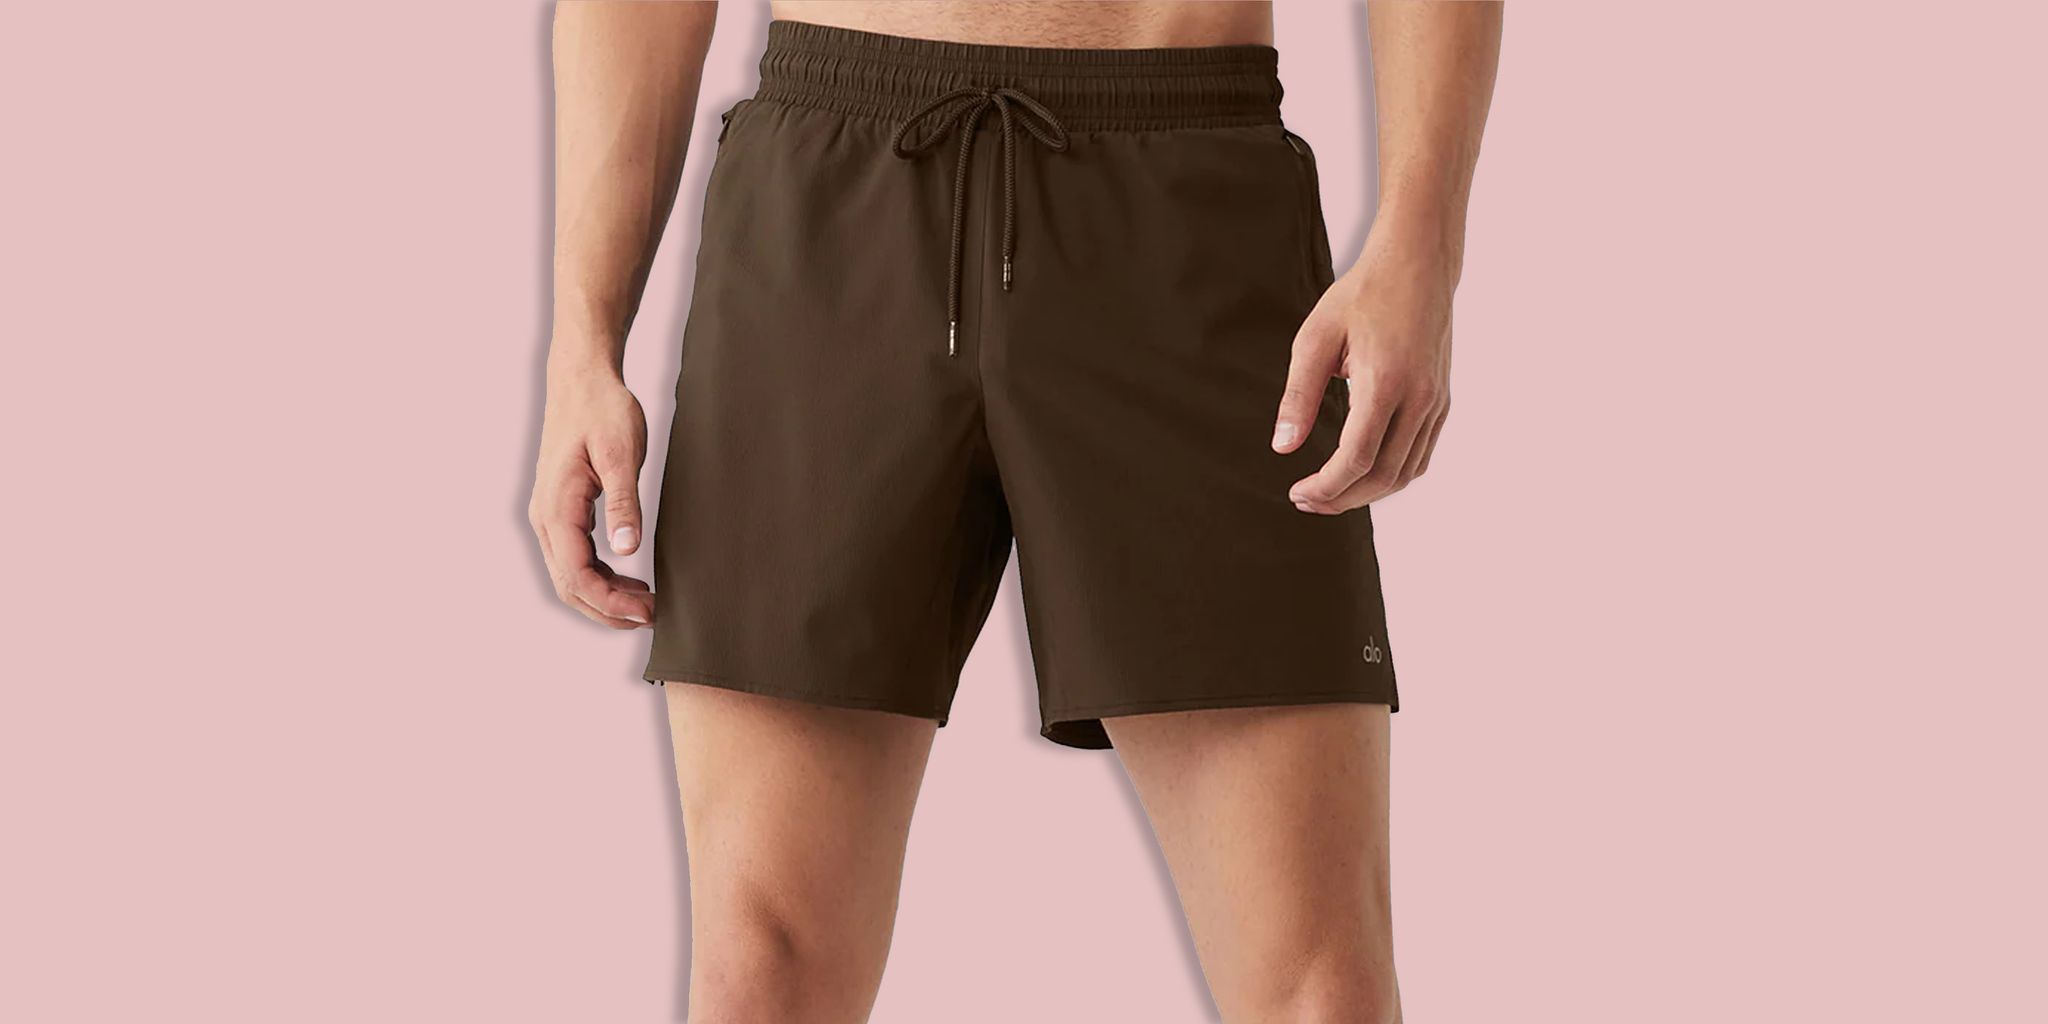 Mens Shorts Gym Sportwear Sides Slit Bottoms Running Underwear Sleeping  Fashion